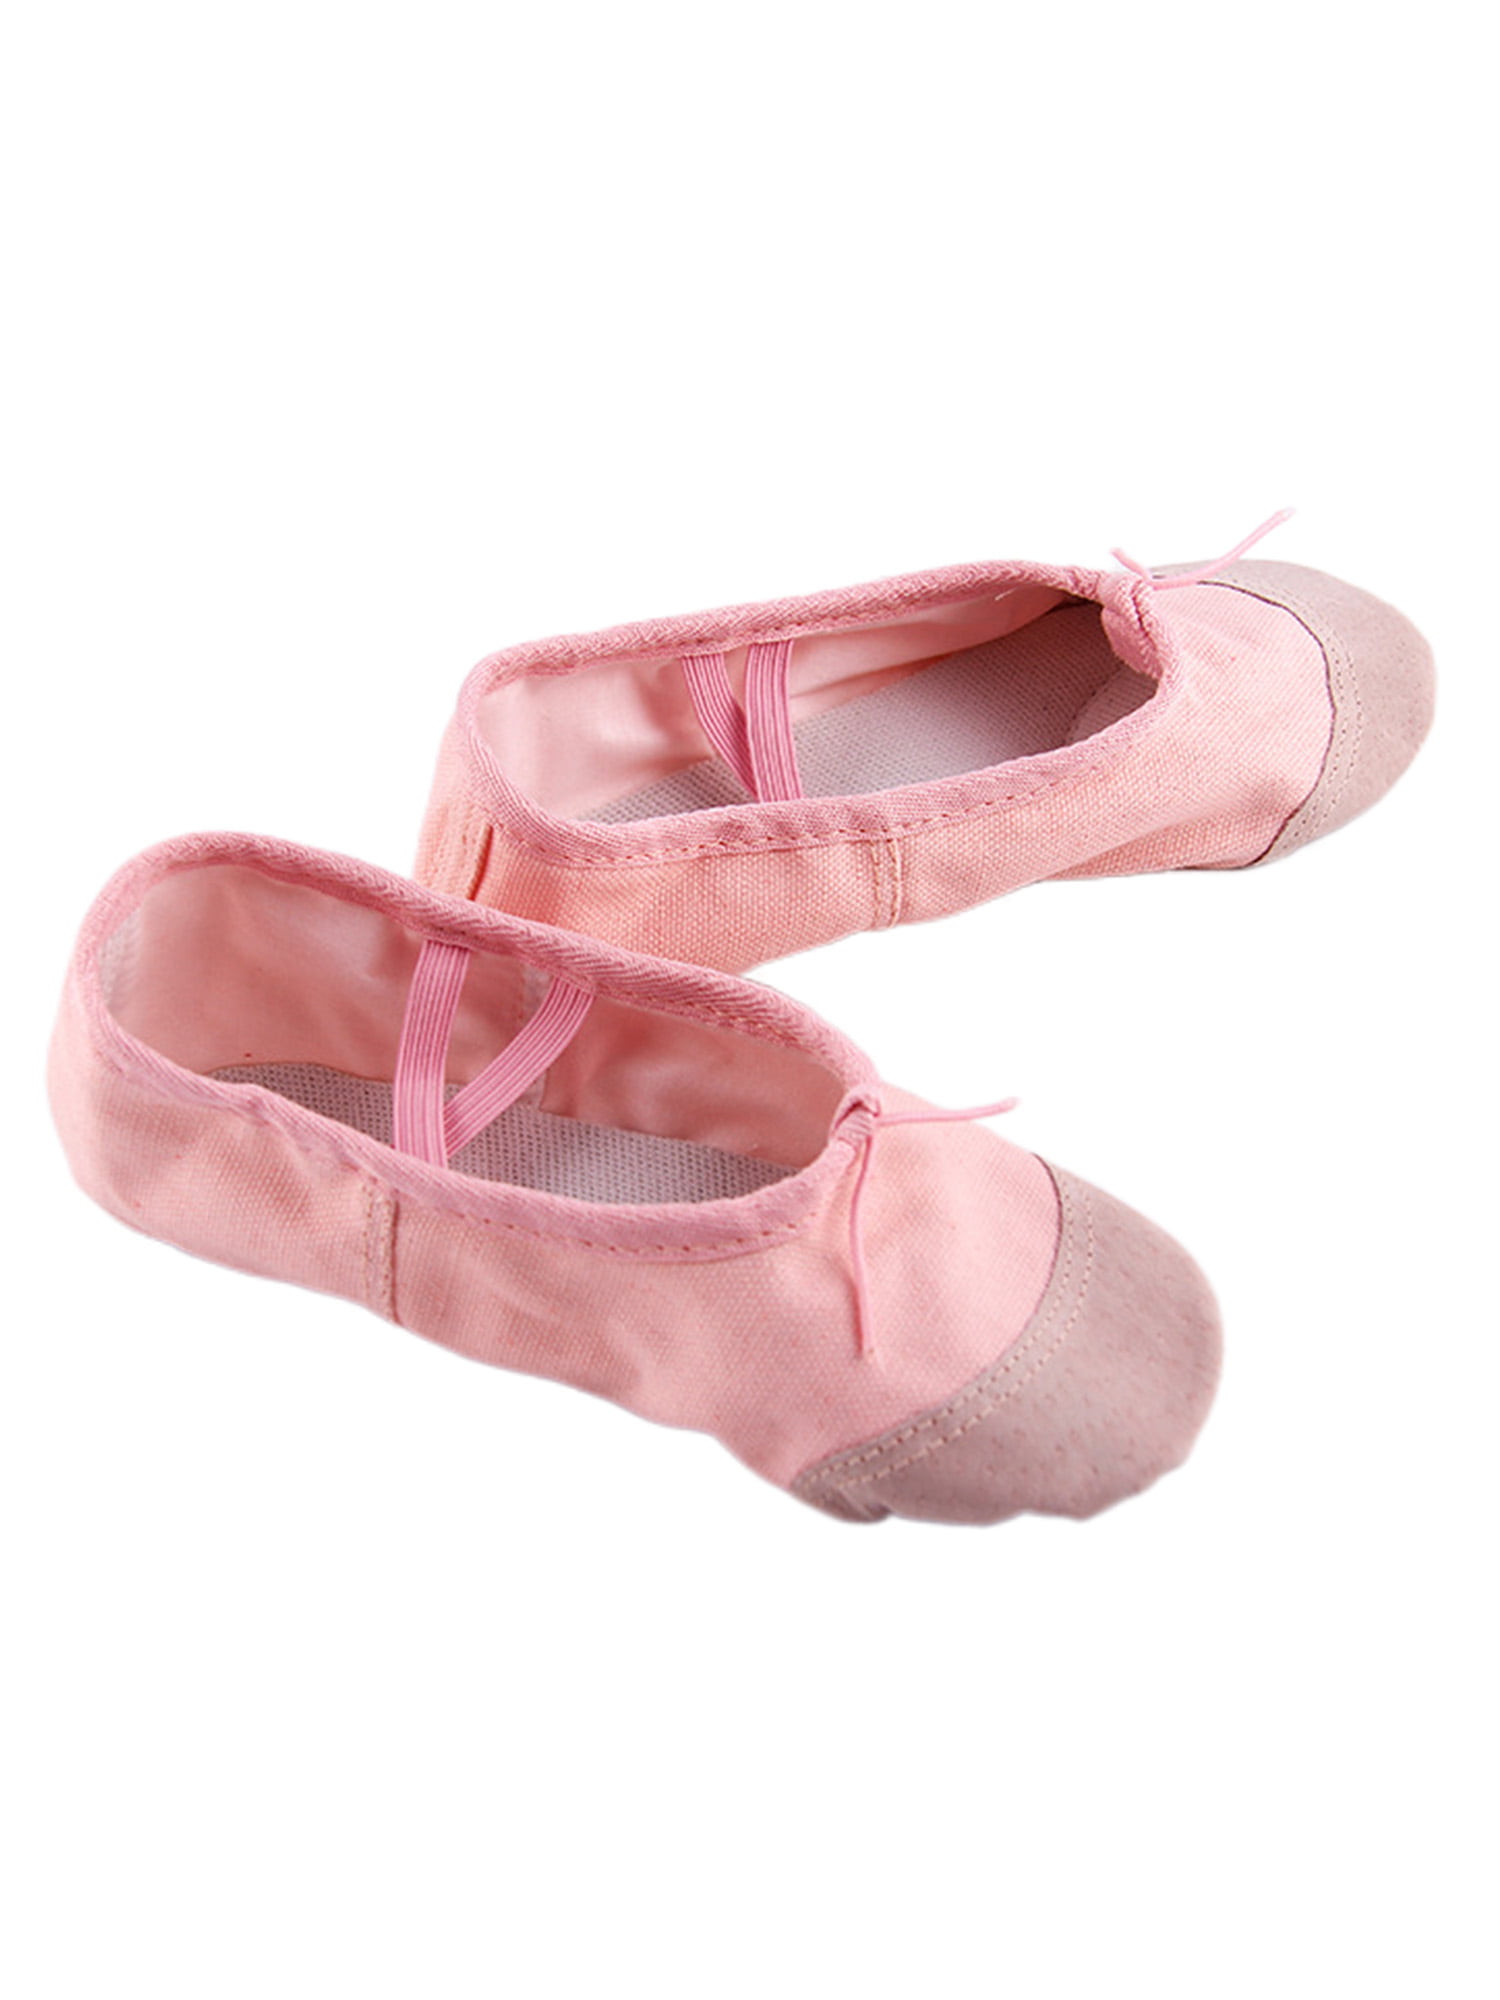 Ballet Shoes Canvas Pink Split Sole Gymnastic Yoga 